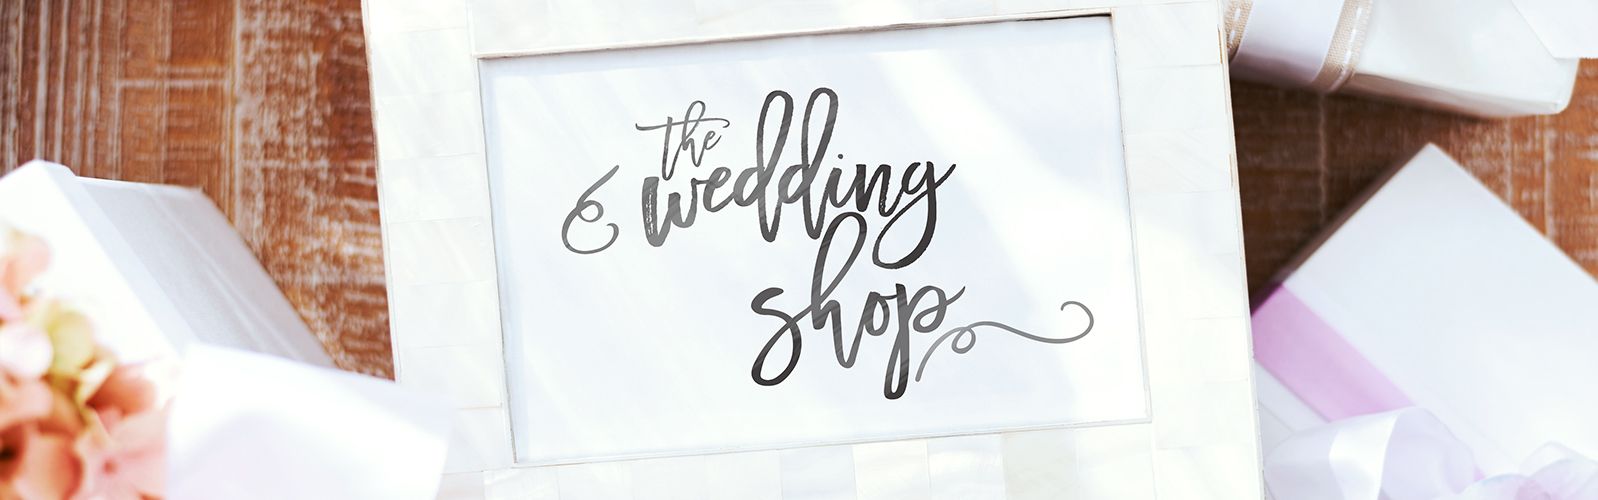 the wedding shop qvc